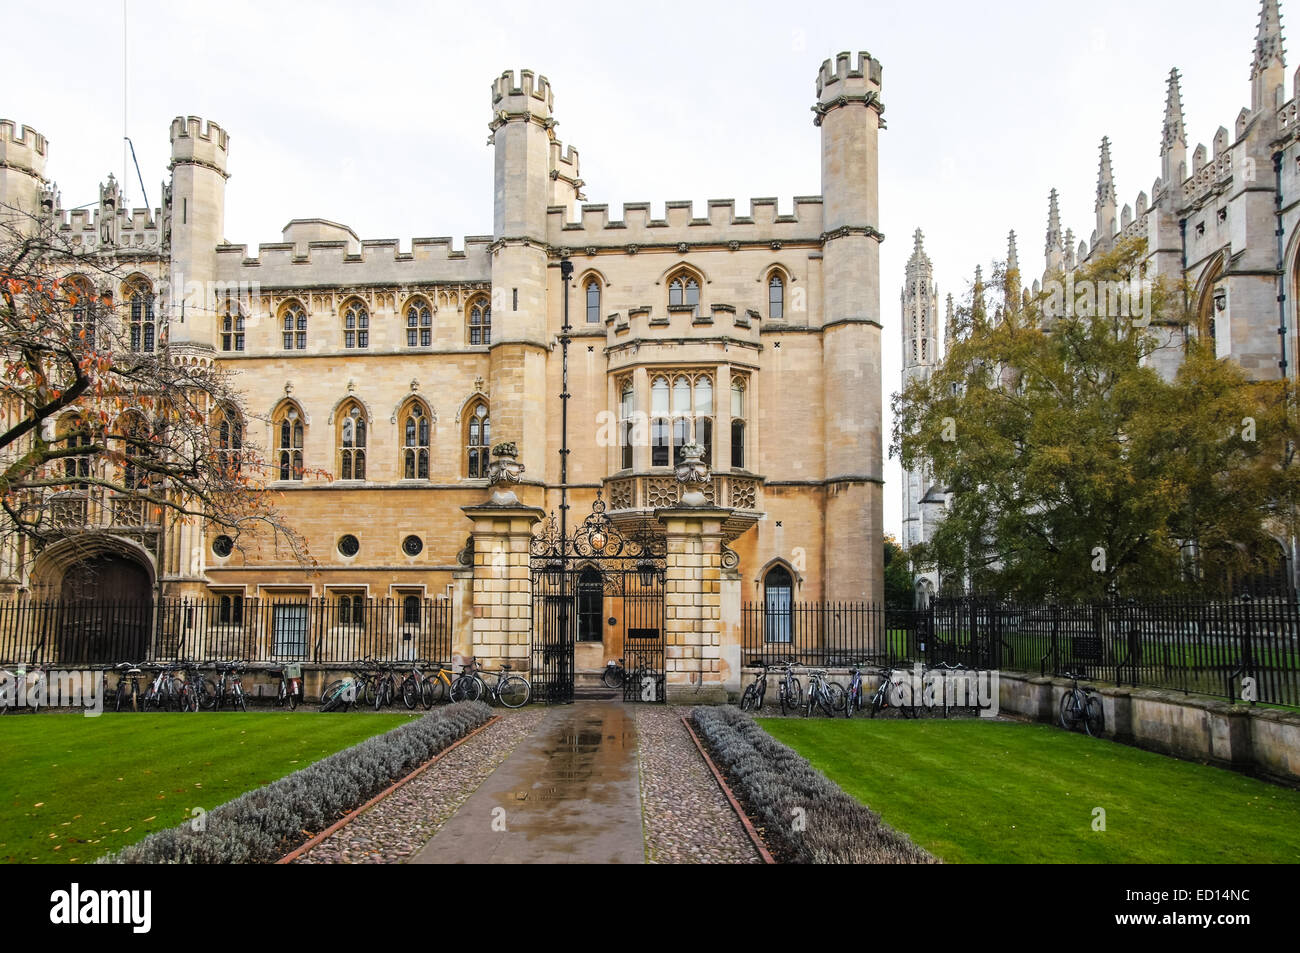 Les bâtiments de l'Université de Cambridge, Cambridge Cambridgeshire Angleterre Royaume-Uni UK Banque D'Images